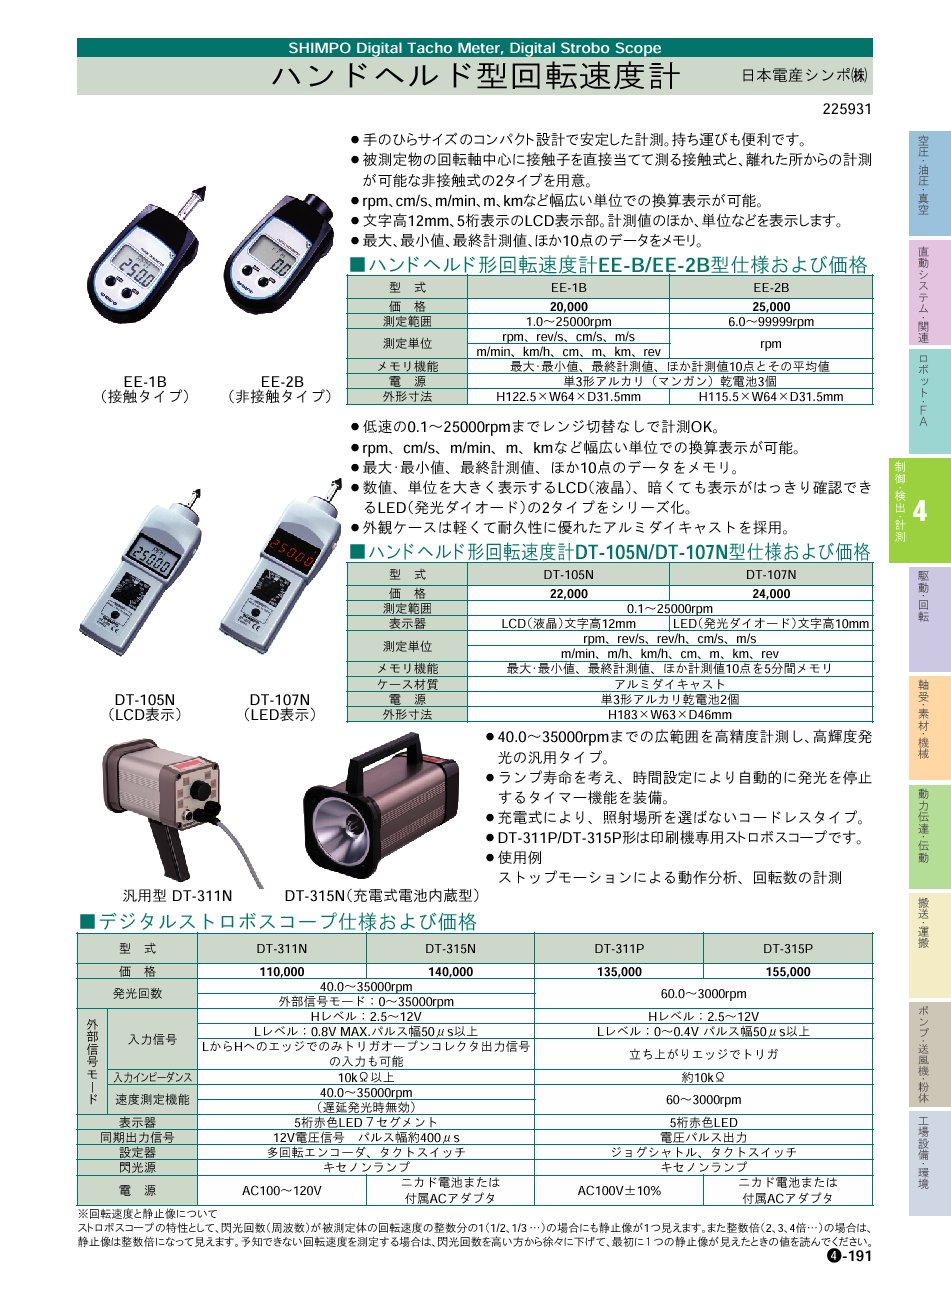 日本電産シンポ(株) ハンドヘルド型回転速度計 デジタルストロボスコープ P04-191 制御・検出・計測機器 価格